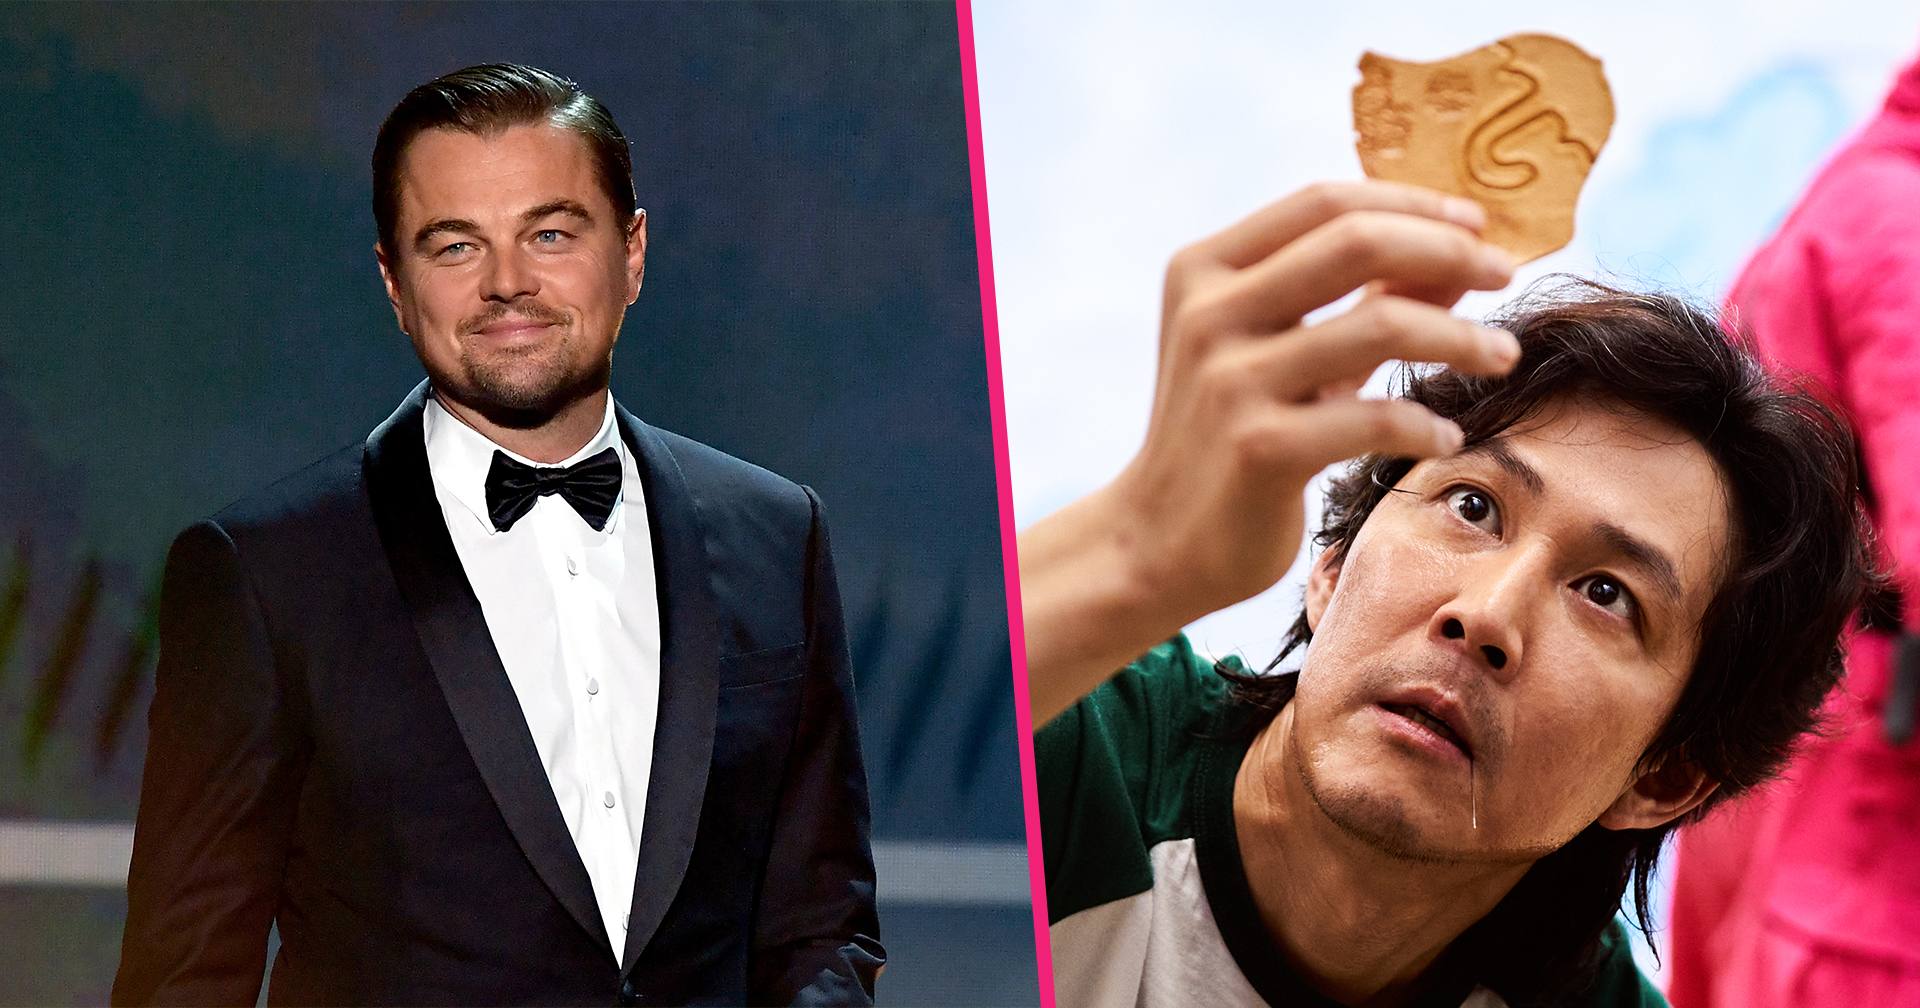 ผู้กำกับ ‘Squid Game’ เผย อยากชวน Leonardo DiCaprio แฟนตัวยงซีรีส์มาร่วมแสดงในซีซัน 3